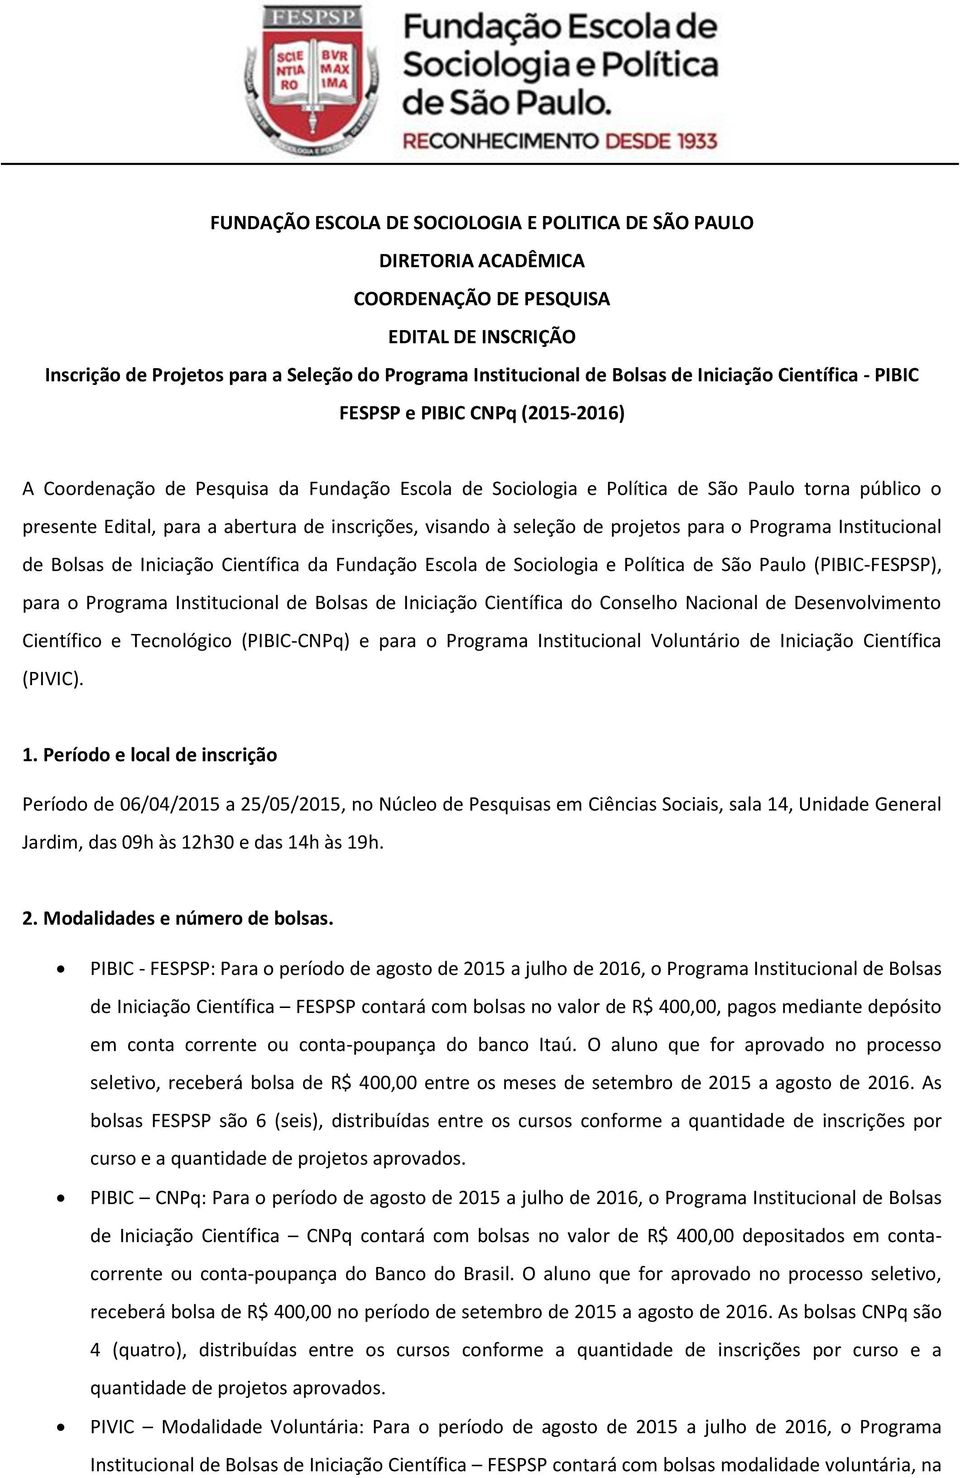 inscrições, visando à seleção de projetos para o Programa Institucional de Bolsas de Iniciação Científica da Fundação Escola de Sociologia e Política de São Paulo (PIBIC-FESPSP), para o Programa